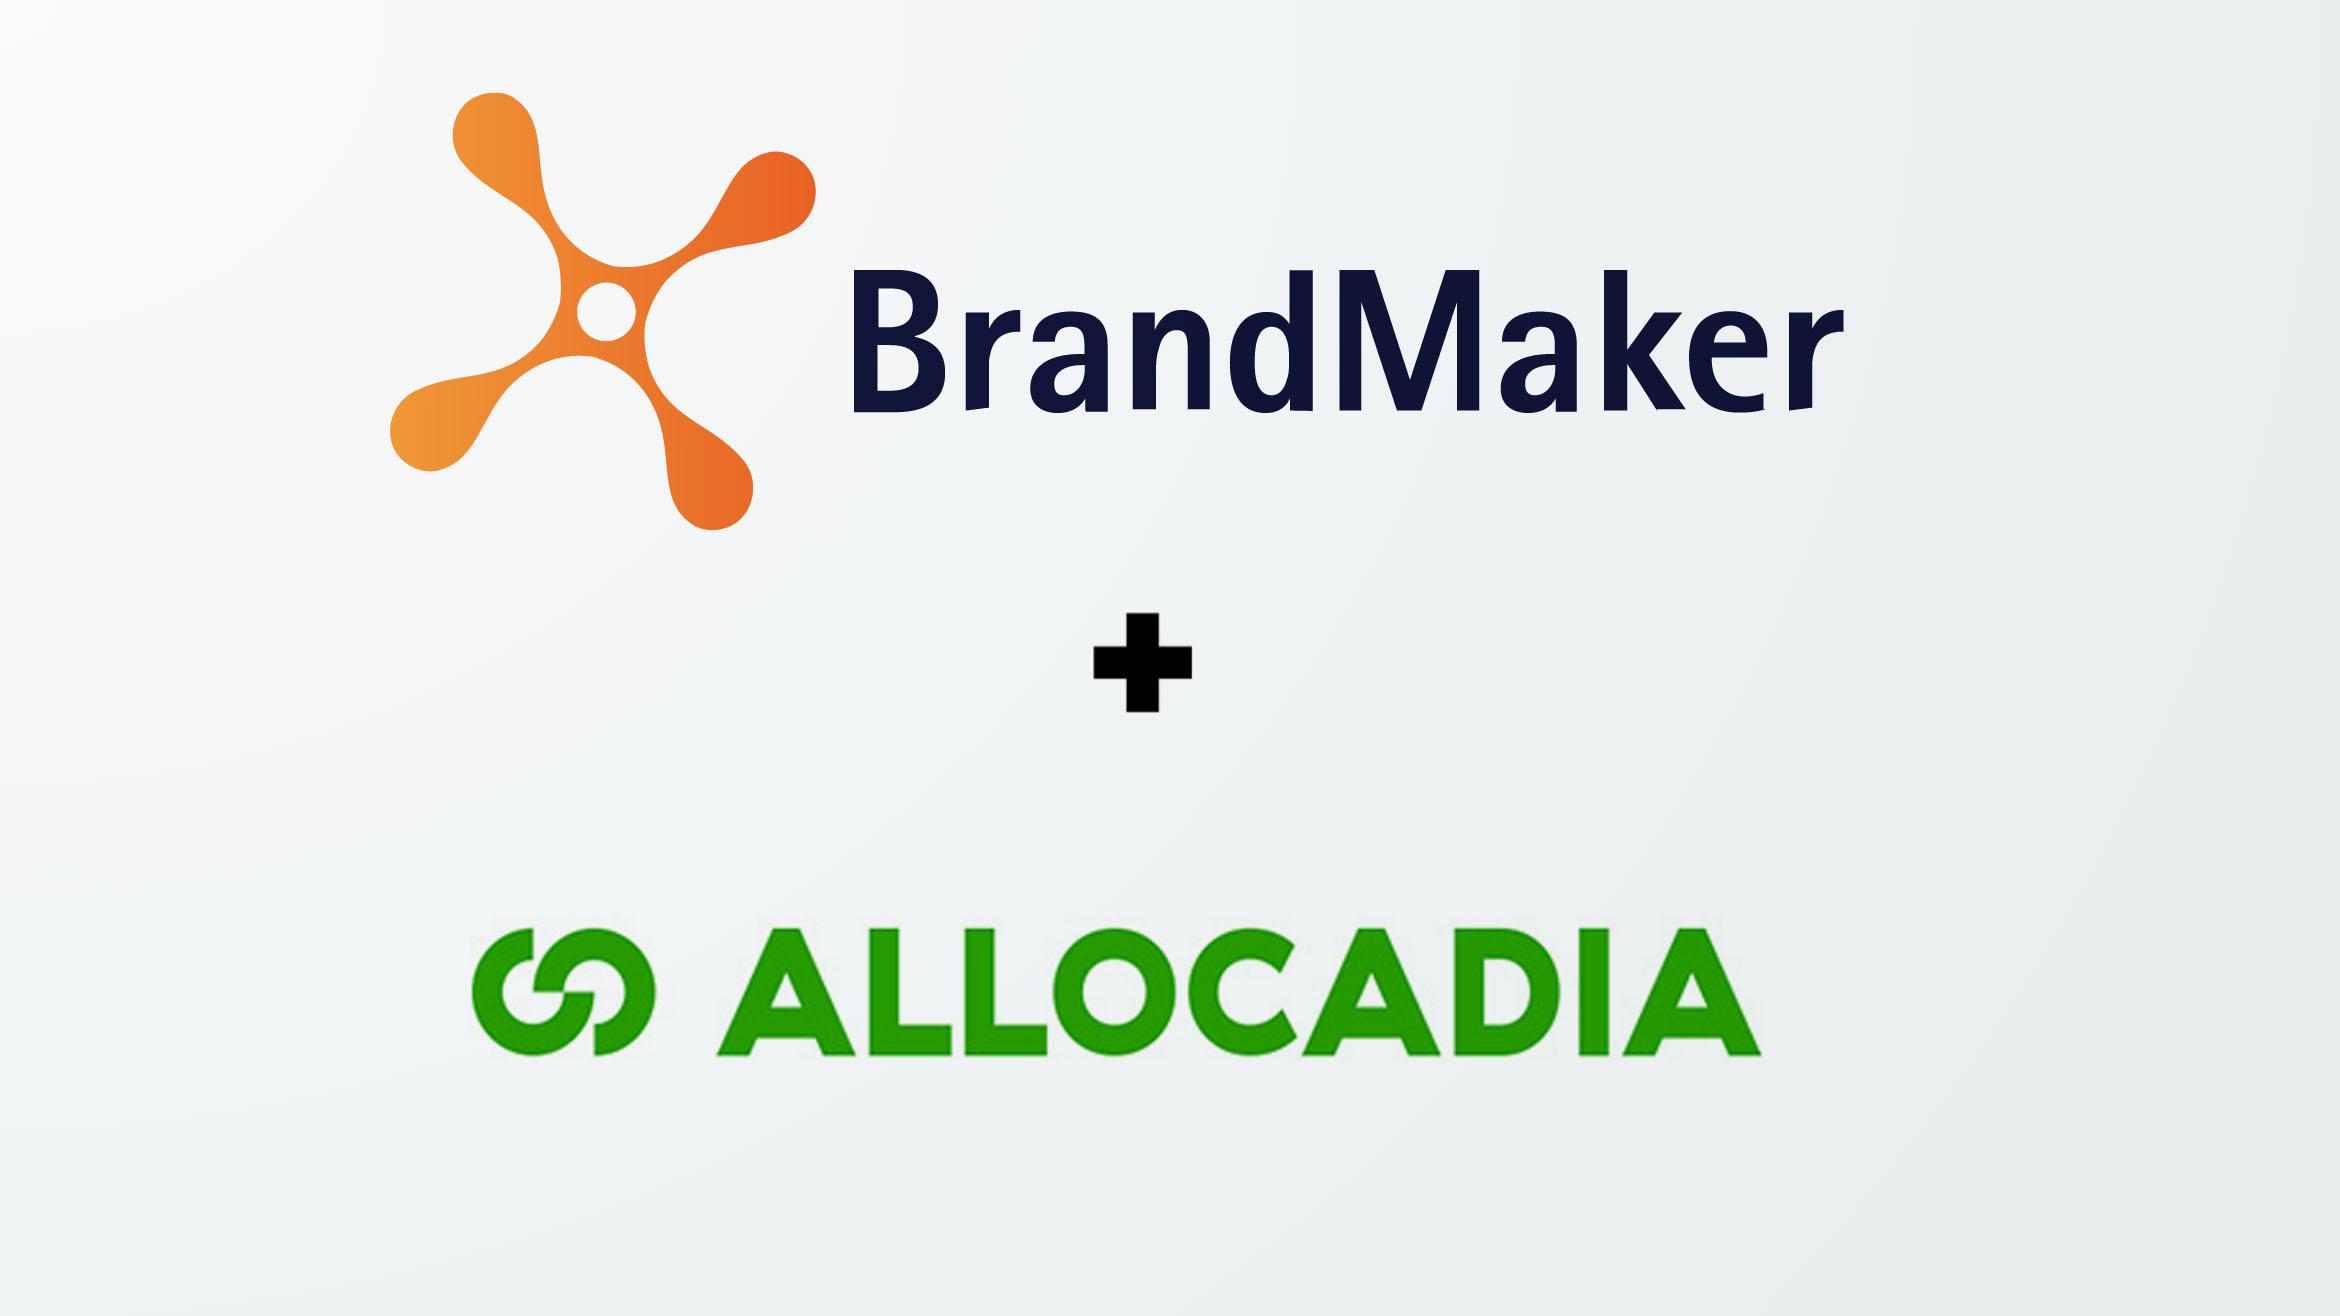 Aus dem Zusammenschluss von Brandmaker und Allocadia entsteht ein neuer Riese am Markt für Marketing-Operations-Software –